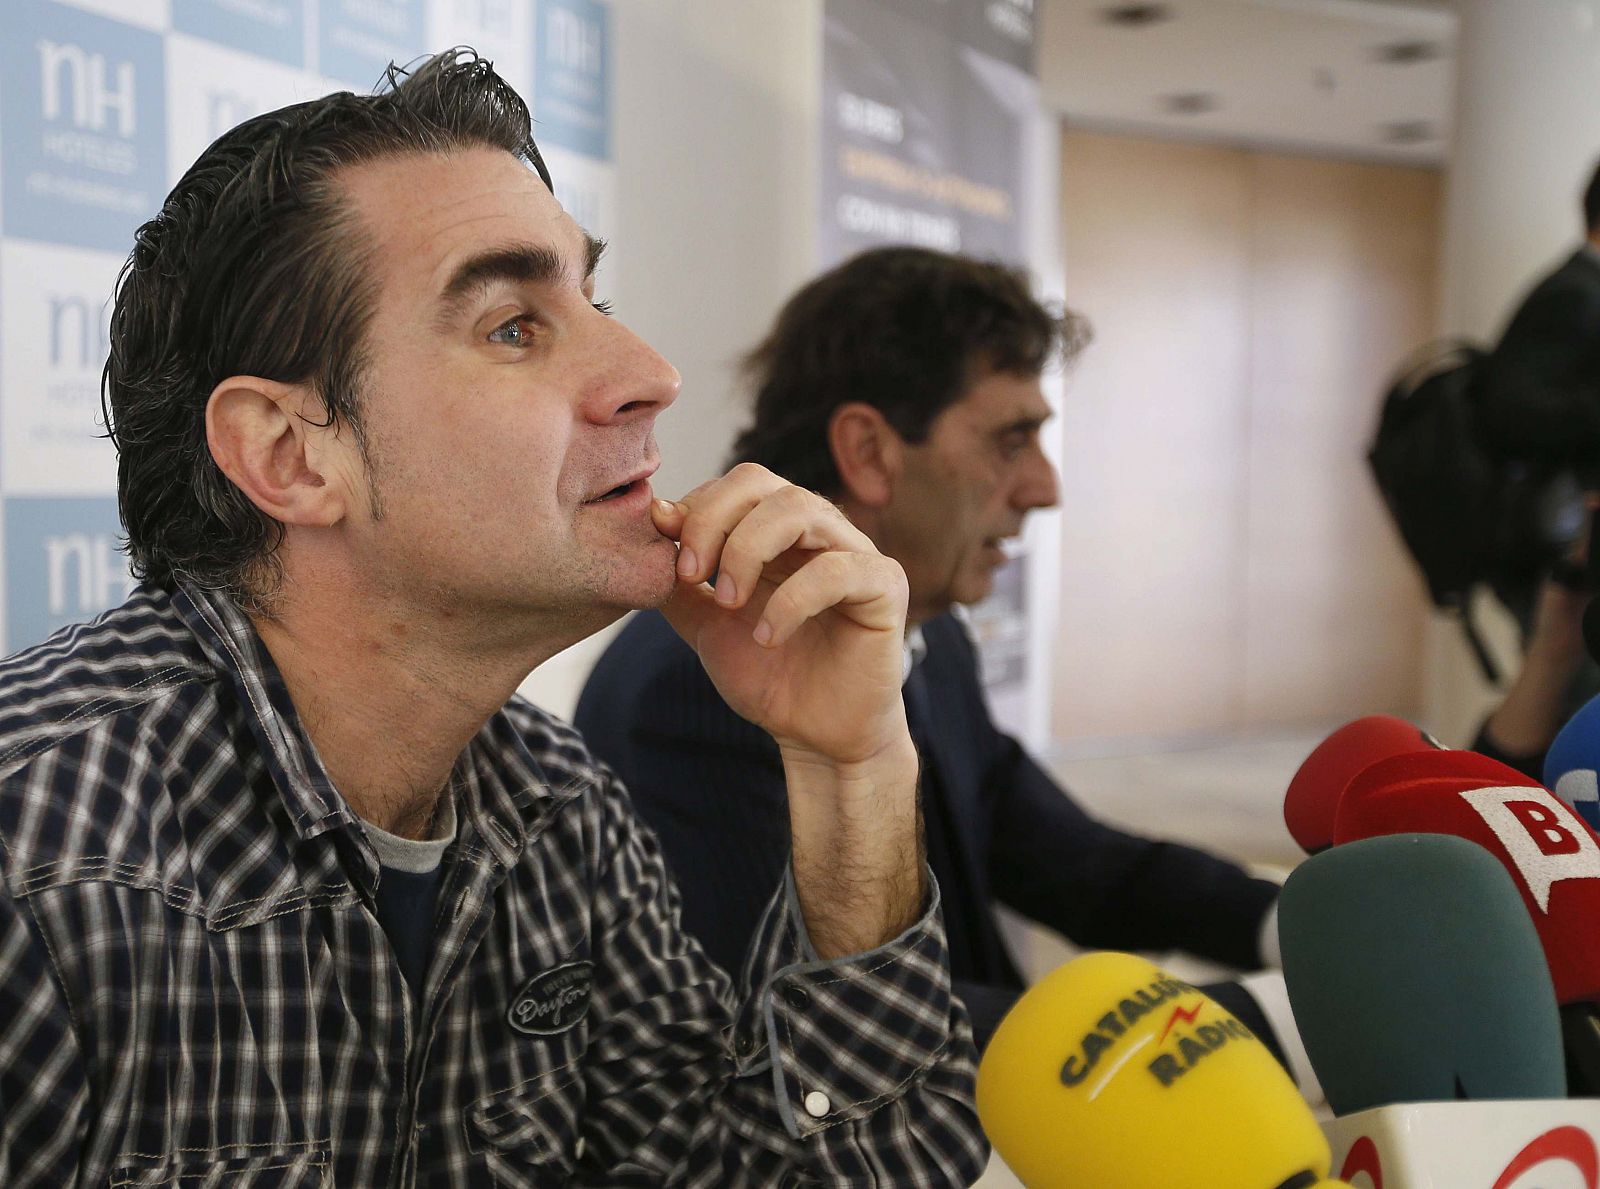 El socio del Barça Jordi Cases, en rueda de prensa junto a su abogado, Felipe Izquierdo